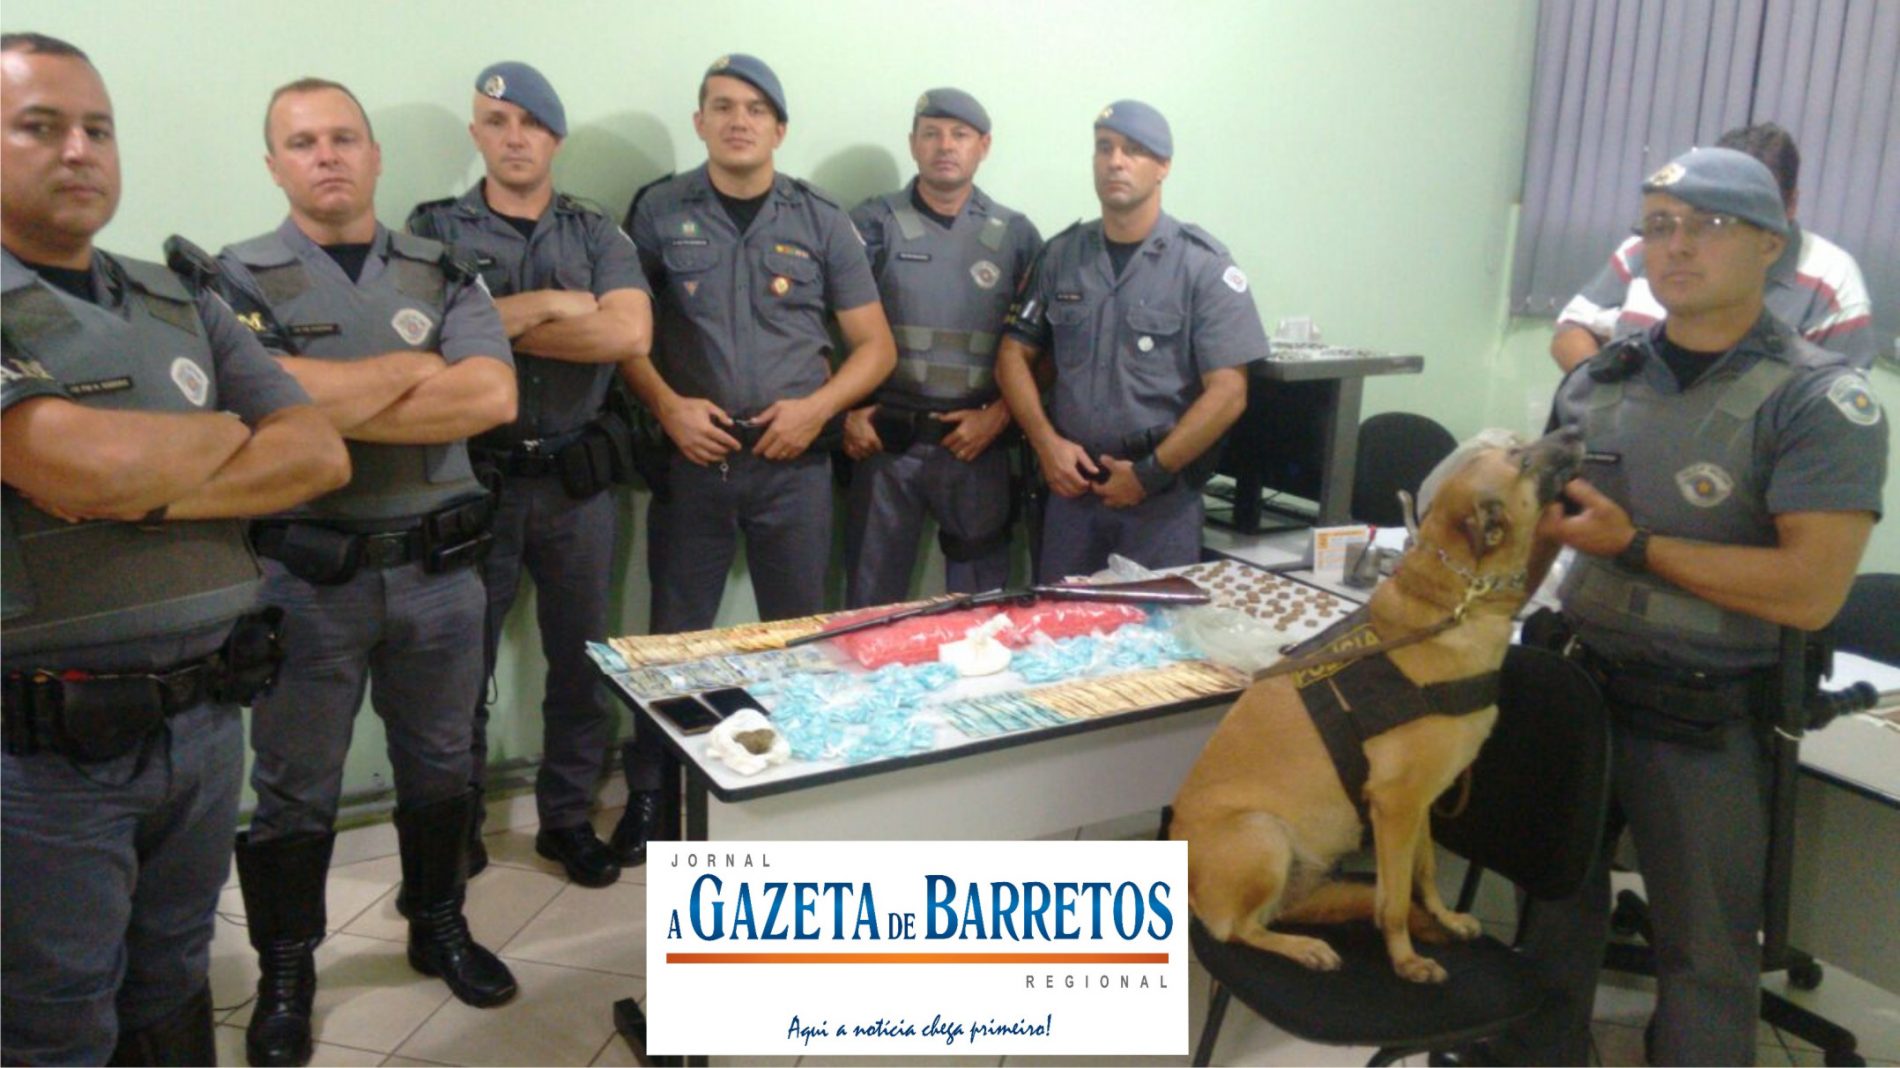 BARRETOS: Operação com as equipes da ROCAM, Força Tática e Canil, prende dois e apreende drogas, dinheiro, arma, Rádio HT e celulares